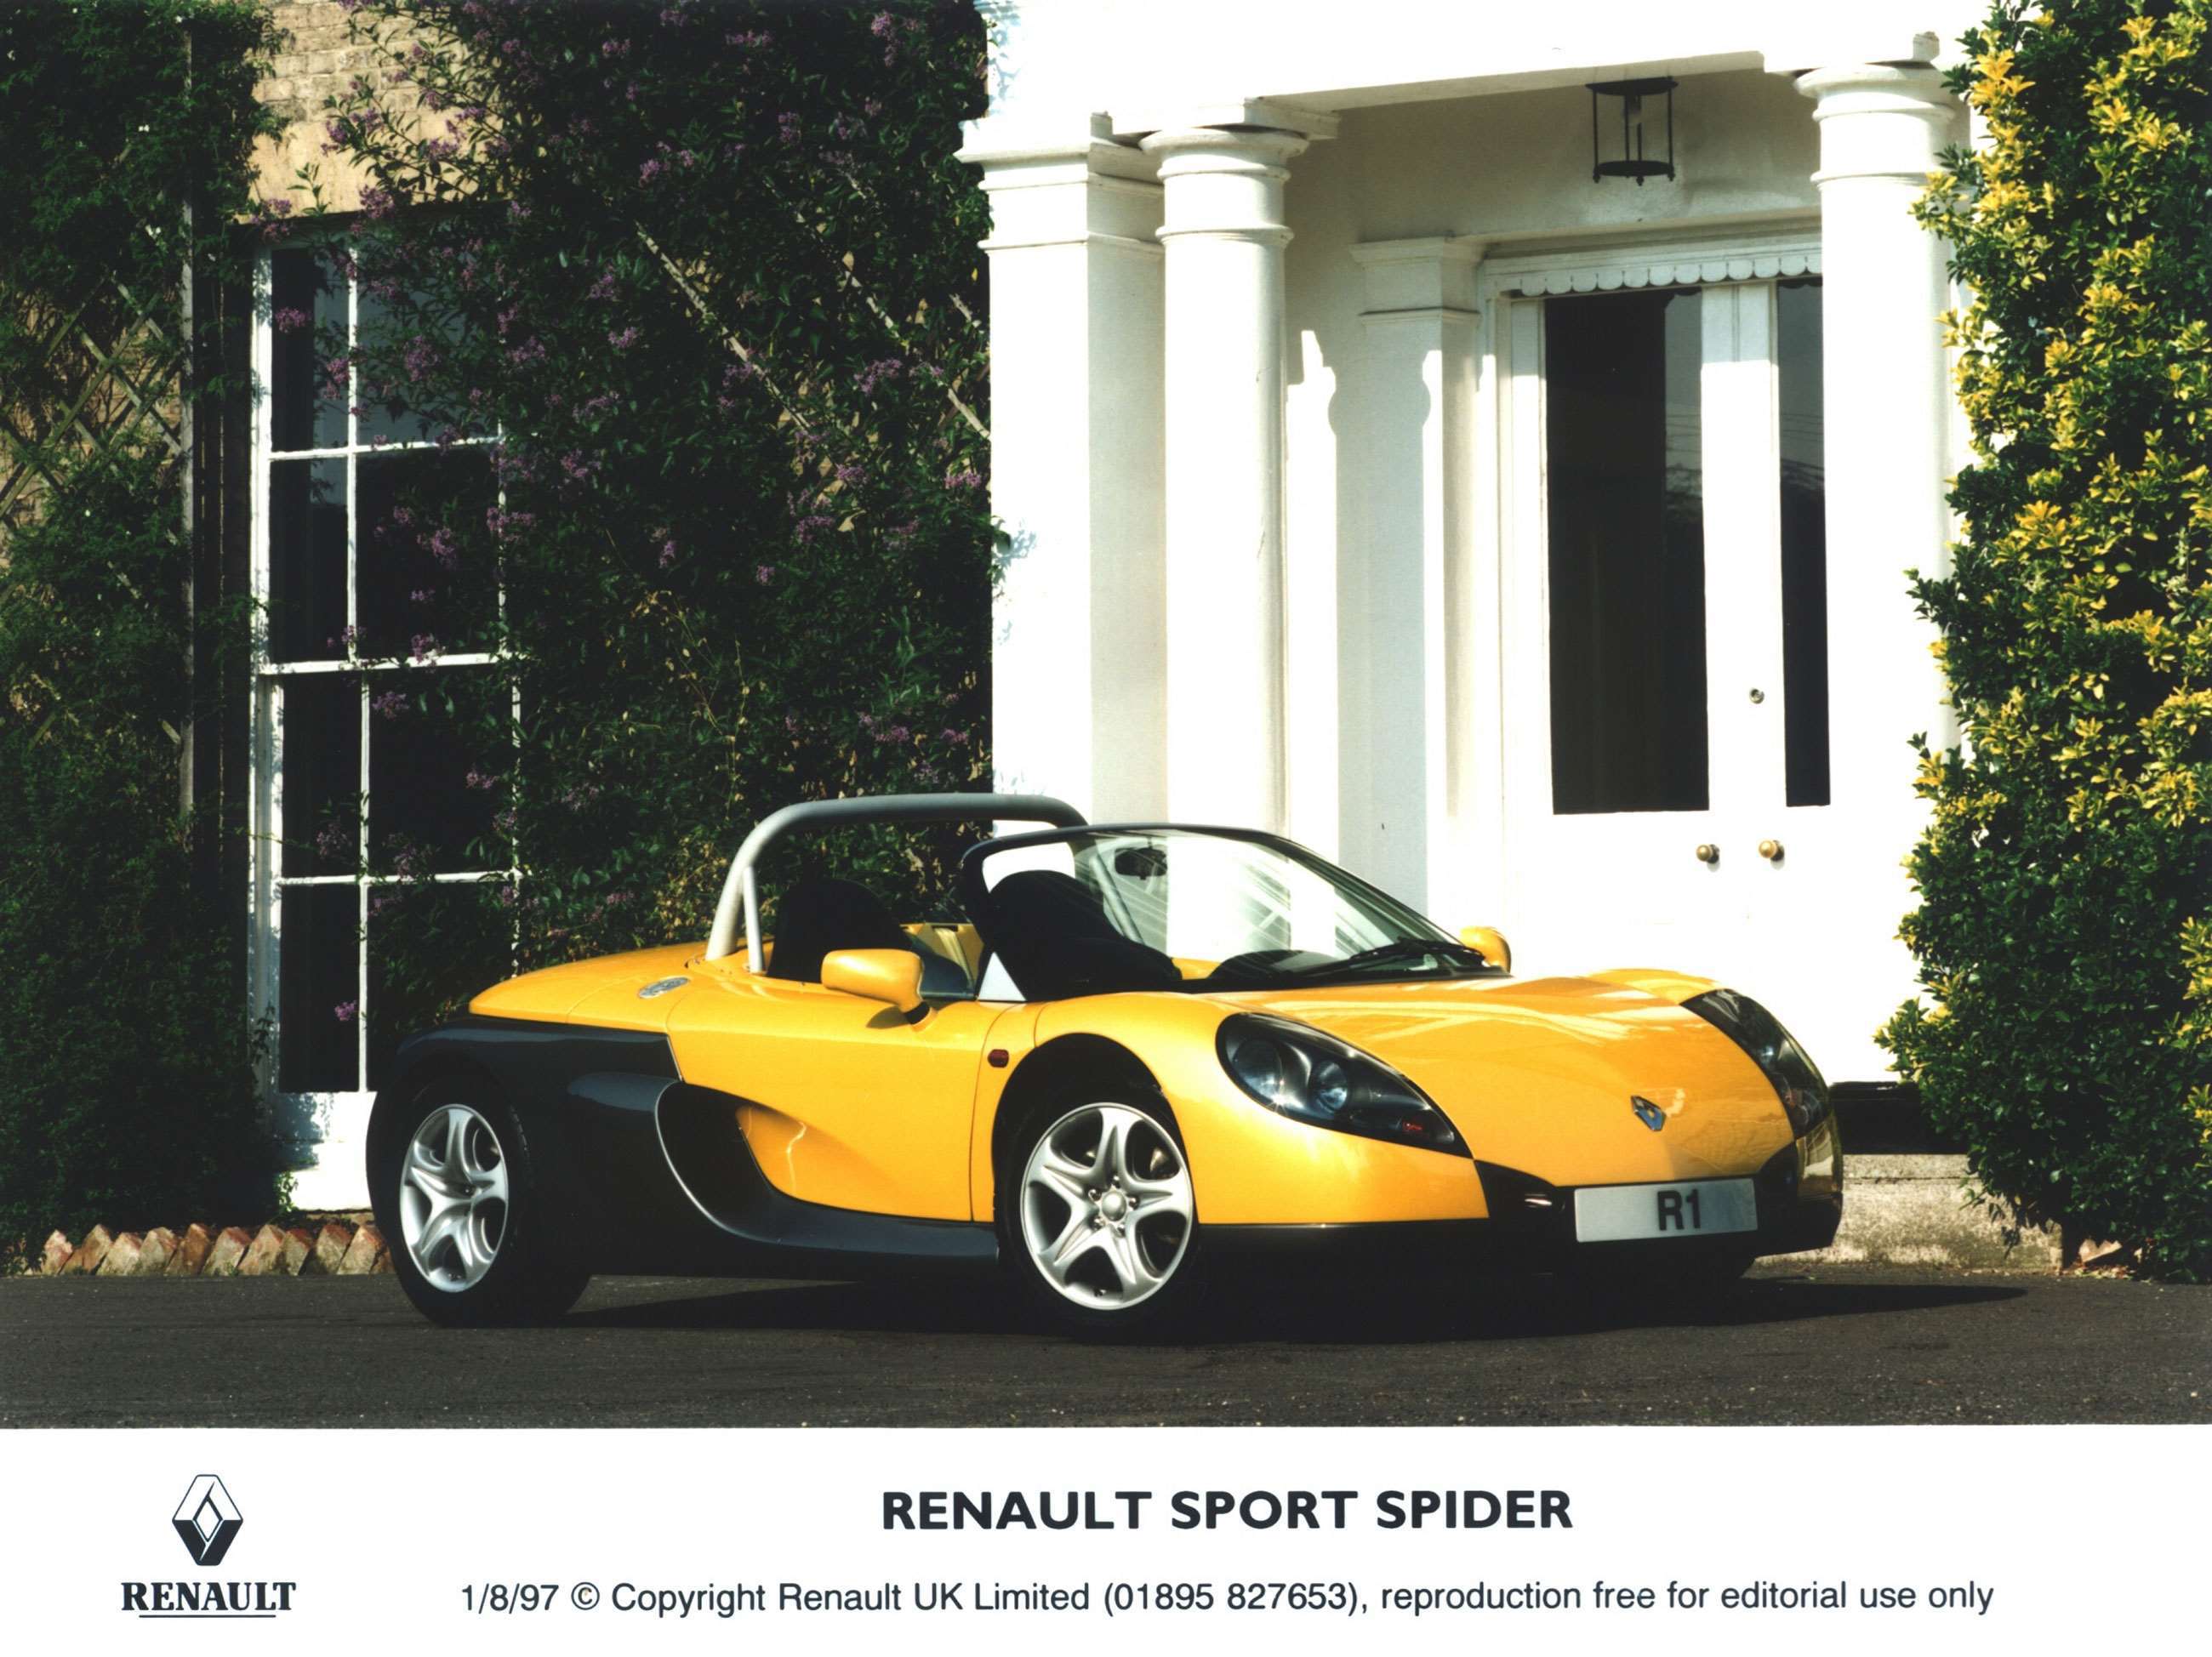 best-renault-road-cars-ever-4-renault-sport-spider-20012022.jpg